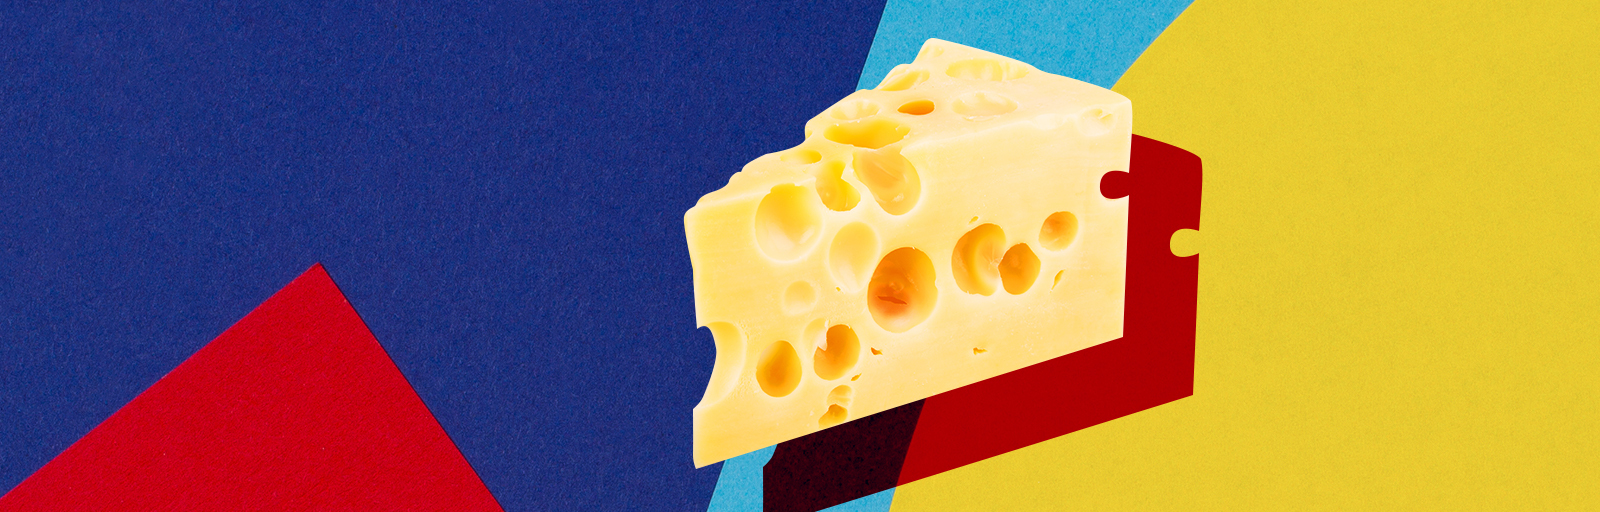 cheese-2.jpg